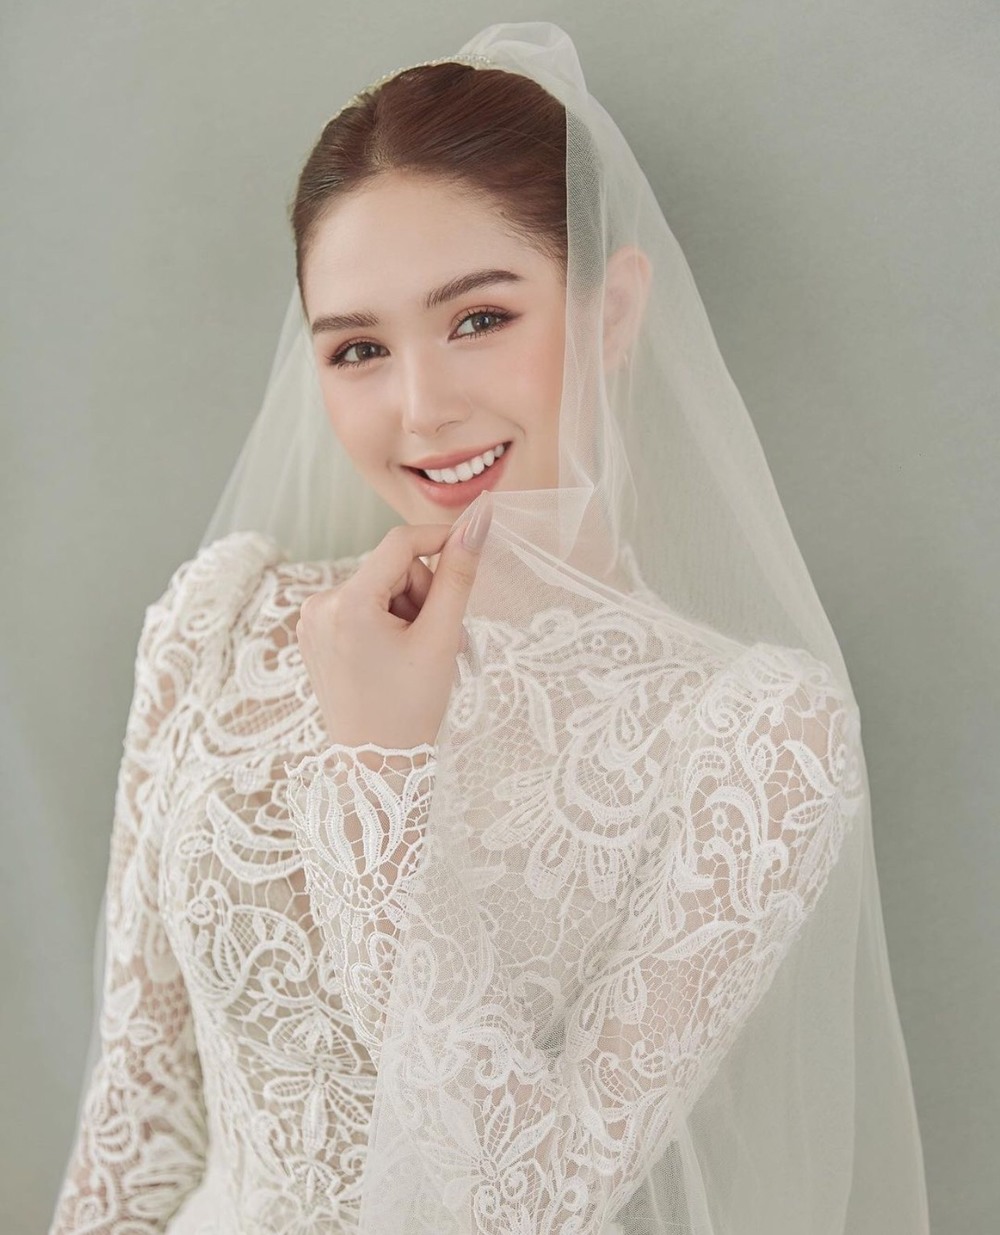 Mới đây, Xoài Non xuất hiện vô cùng xinh đẹp rạng rỡ trong bộ ảnh diện thiết kế váy cưới. (Ảnh: IGNV)